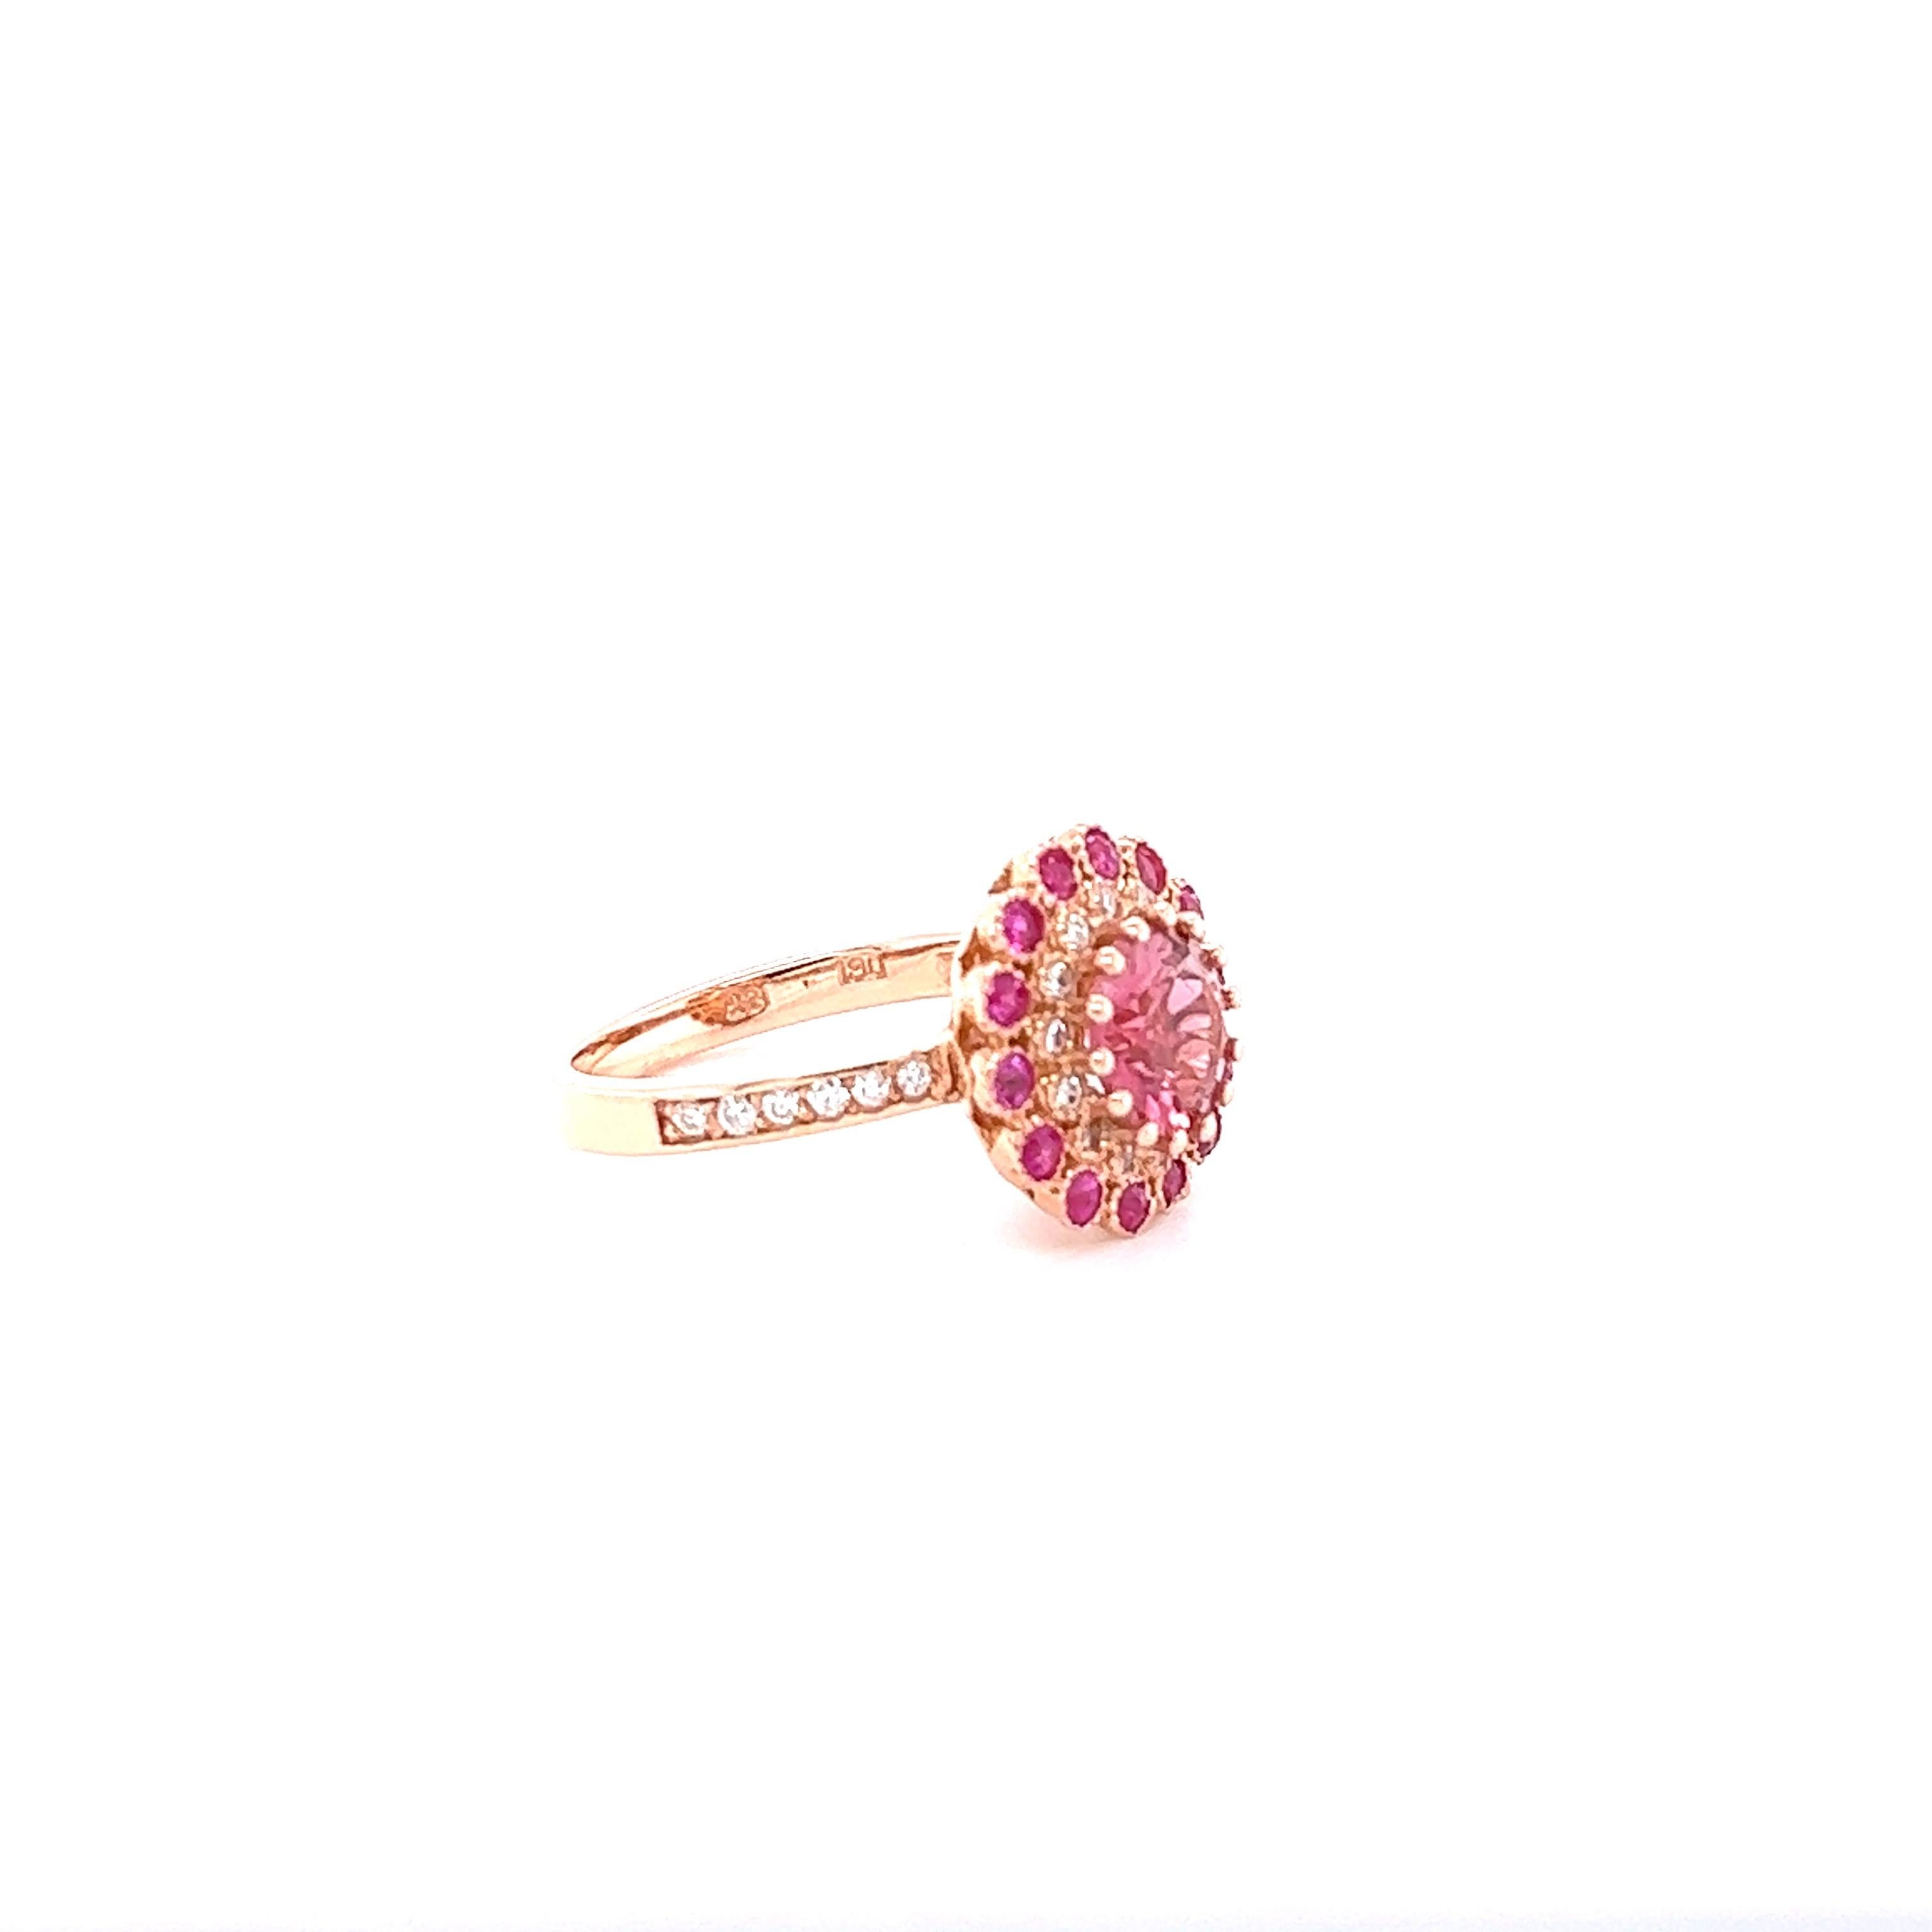 Cette beauté possède une tourmaline rose de taille ronde sertie au centre de la bague, pesant 1,79 carats et mesurant 8 mm.  Elle est entourée de 14 saphirs roses taillés en rond qui pèsent 0.54 carats et de 26 diamants taillés en rond qui pèsent